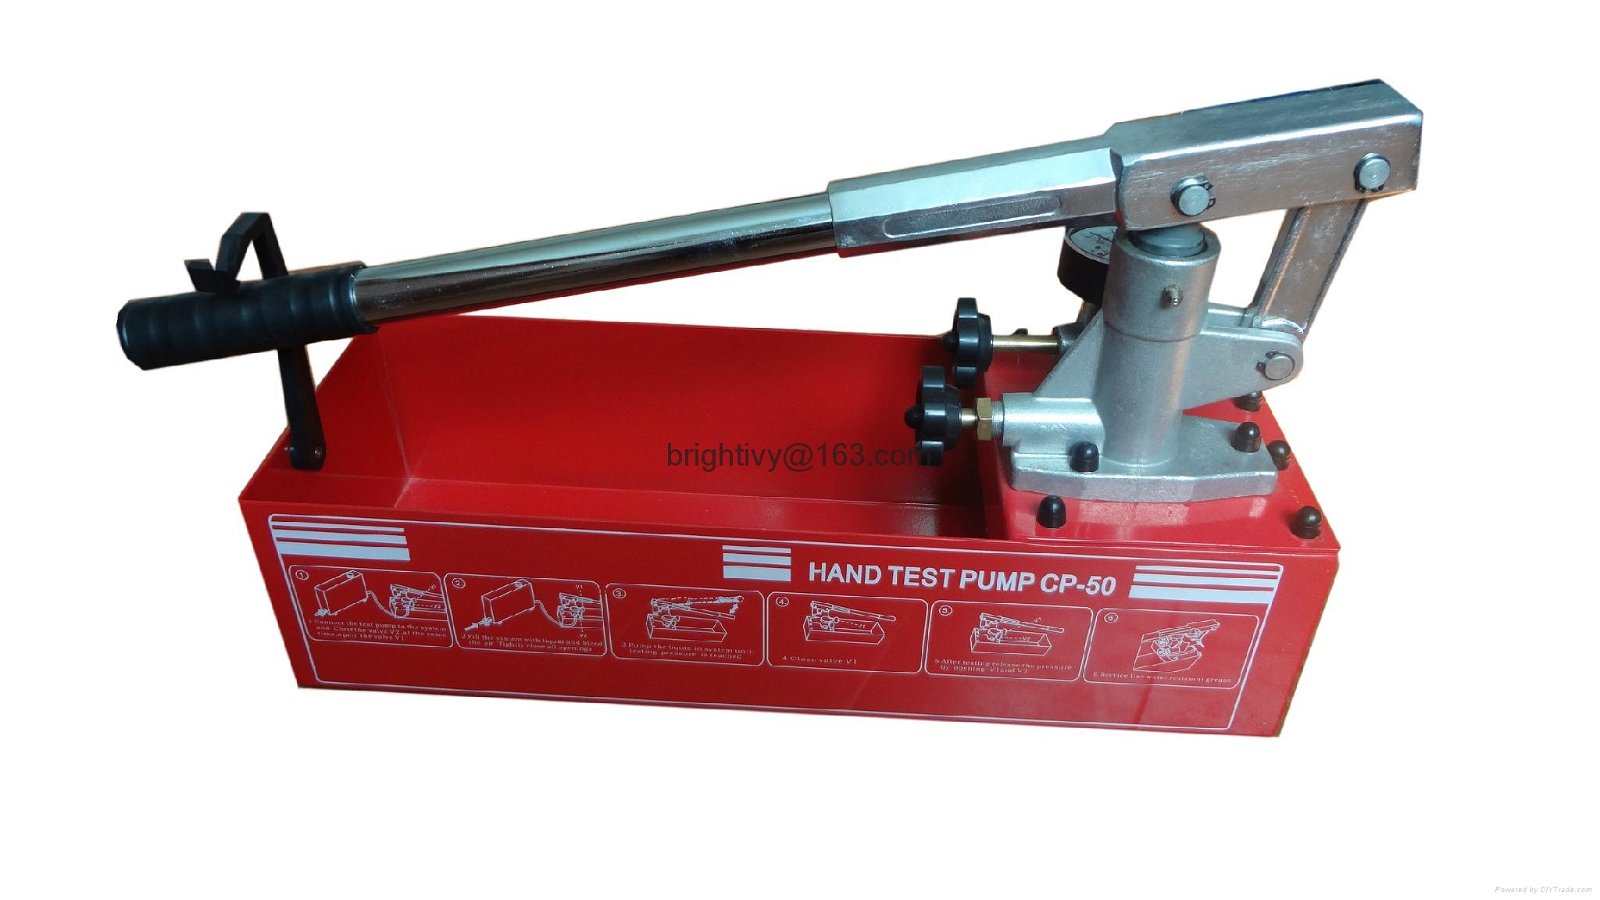 Hydraulic test pumpCP-50